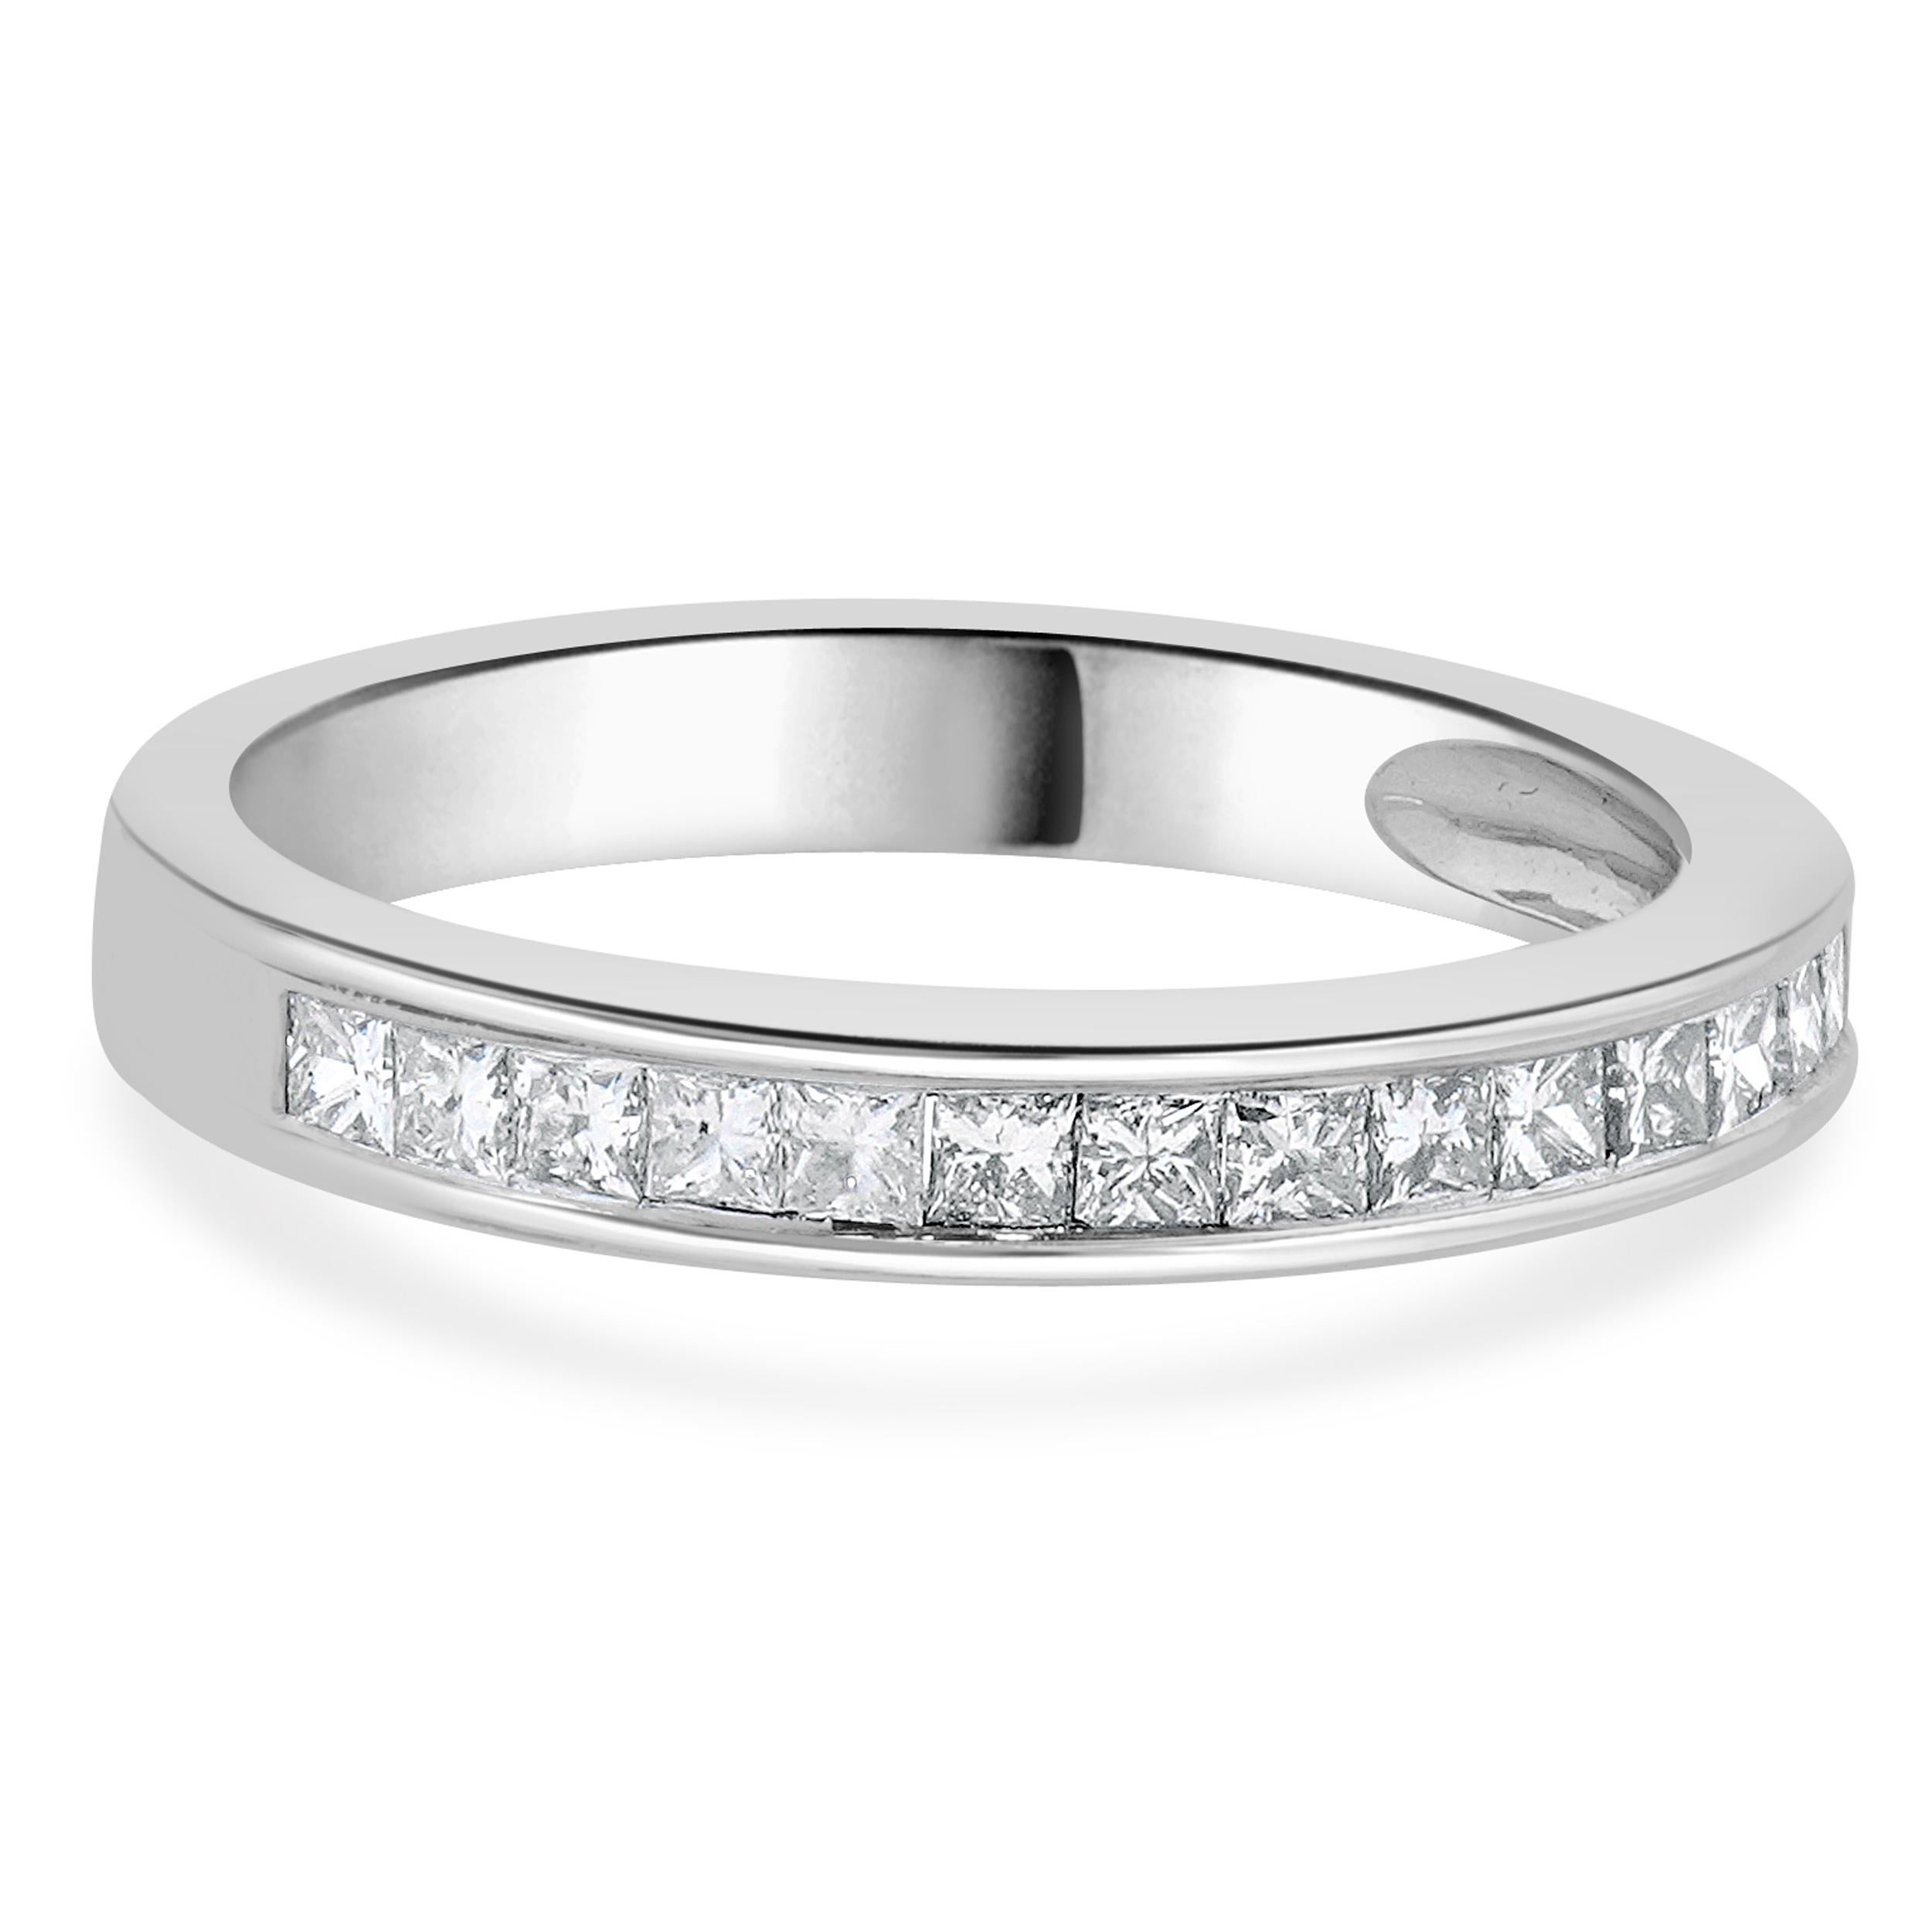 Concepteur : Custom
Matériau : Or blanc 14K
Diamants : 16 diamants de taille princesse = 0,56cttw
Couleur : H
Clarté : SI1-2
Taille : 7 tailles disponibles 
Dimensions : le sommet de l'anneau mesure 3.1 mm de large.
Poids : 3.20 grammes
